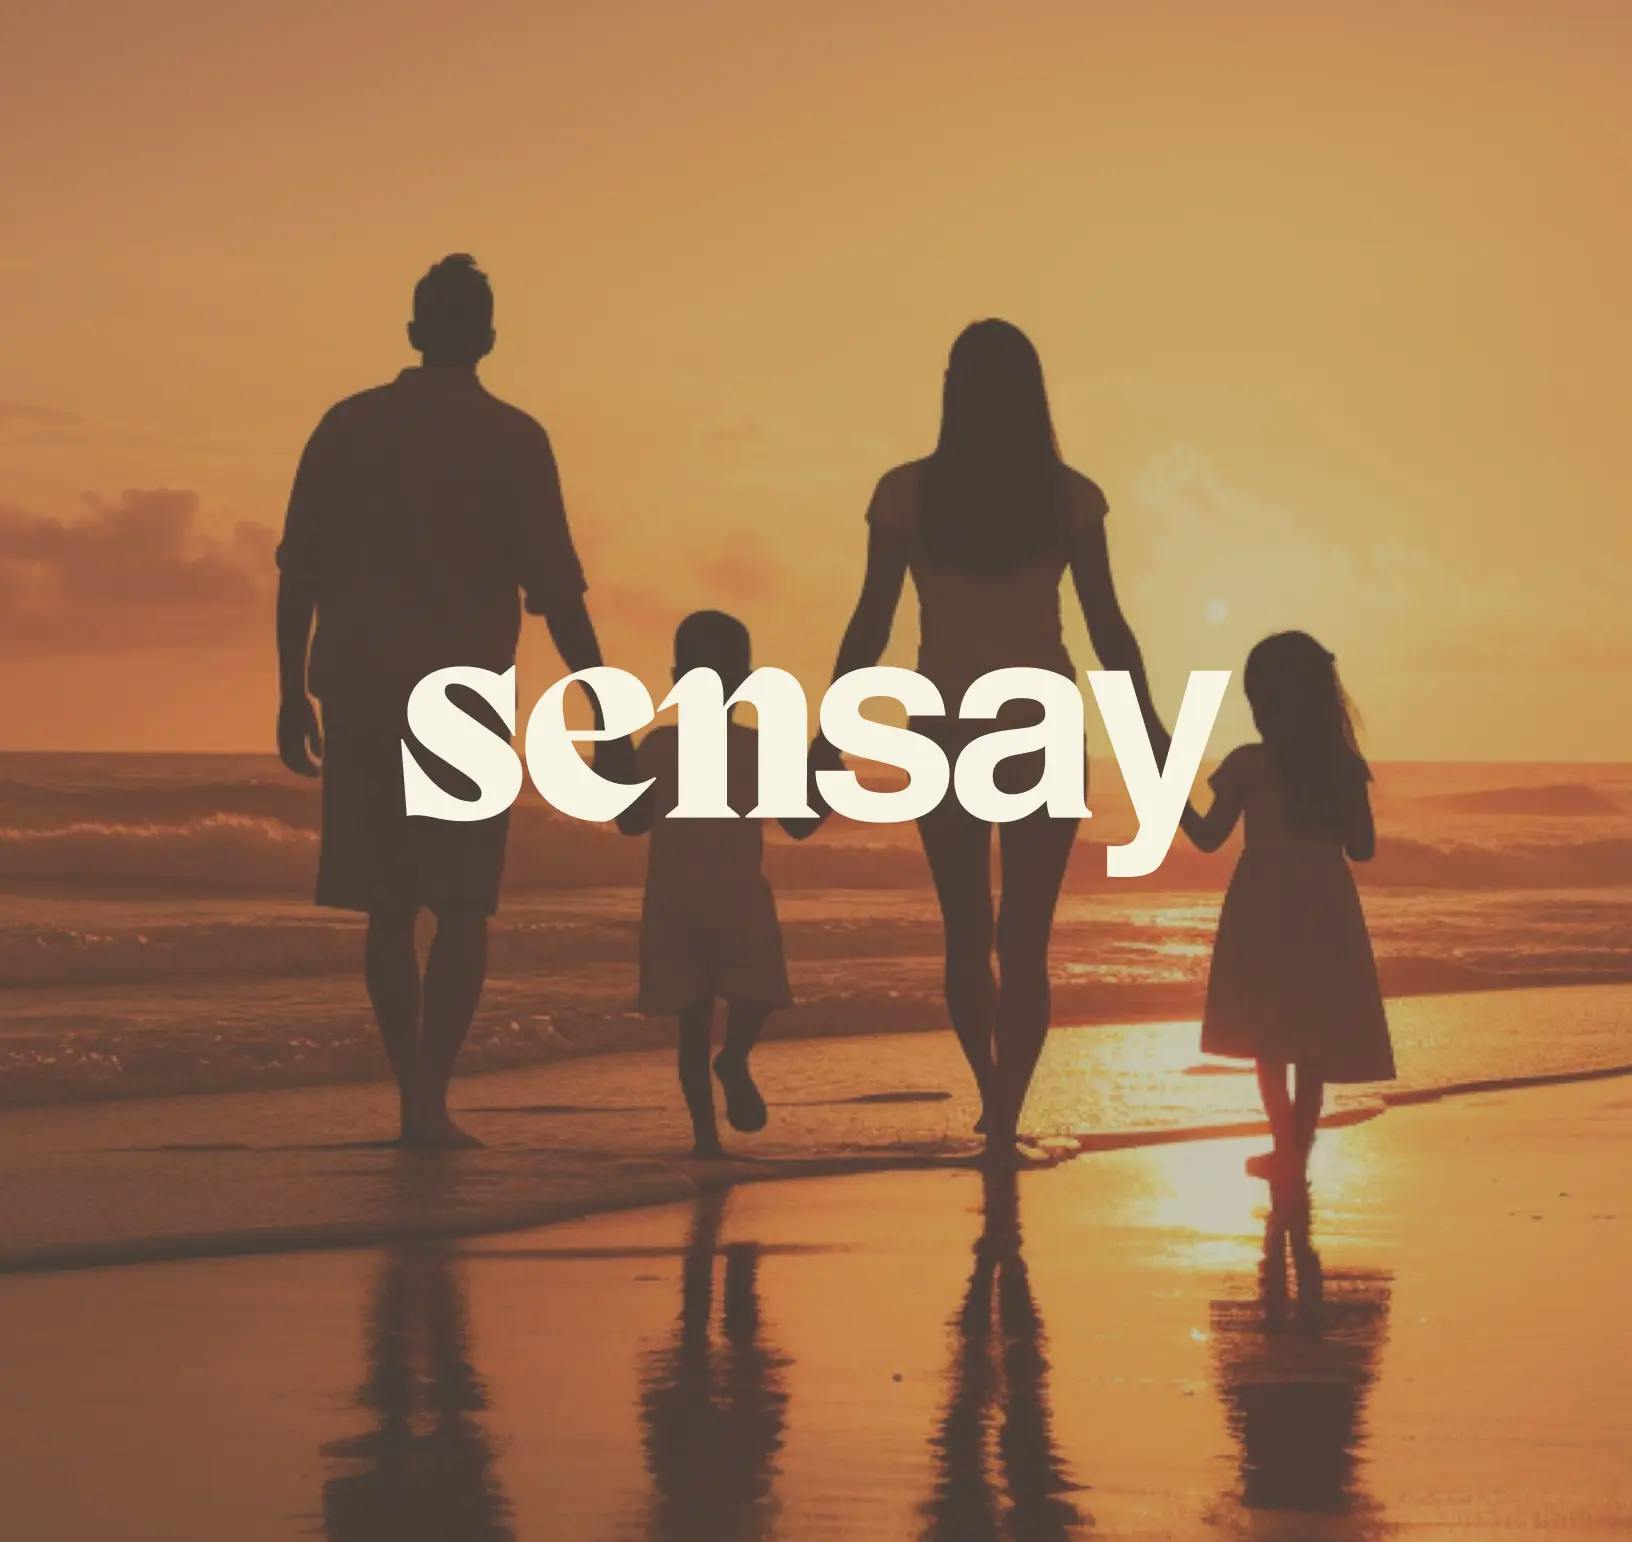 Sensay - family